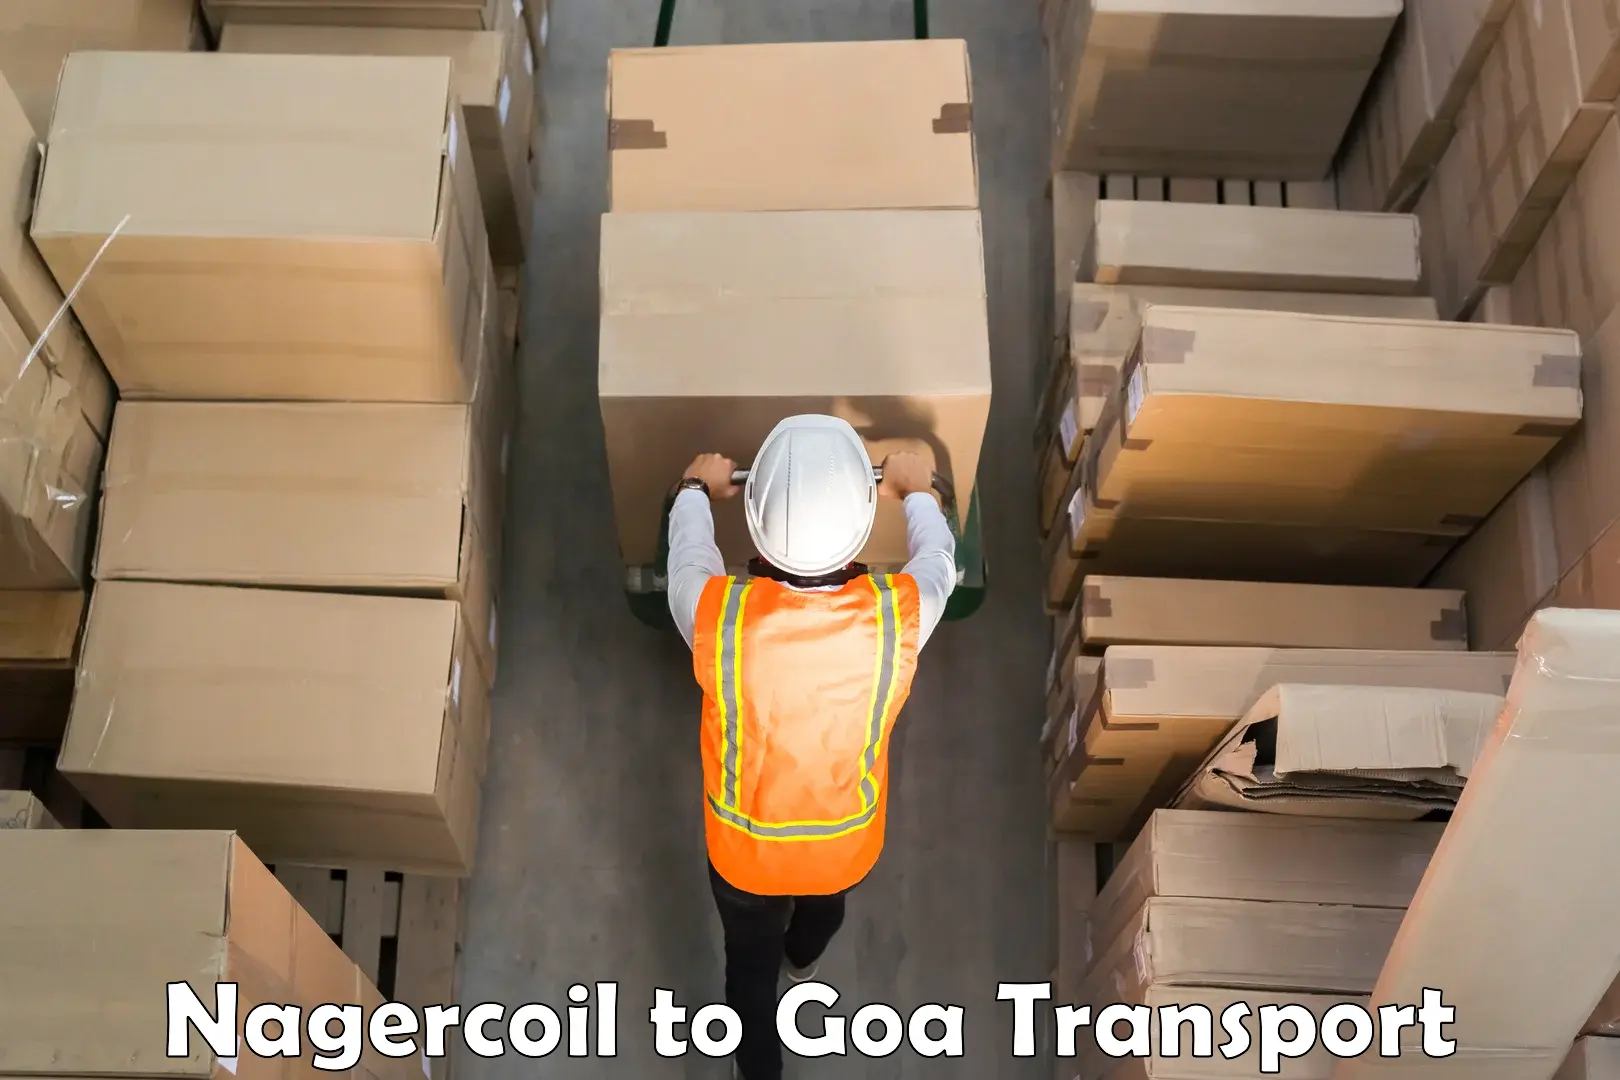 Shipping partner Nagercoil to Vasco da Gama